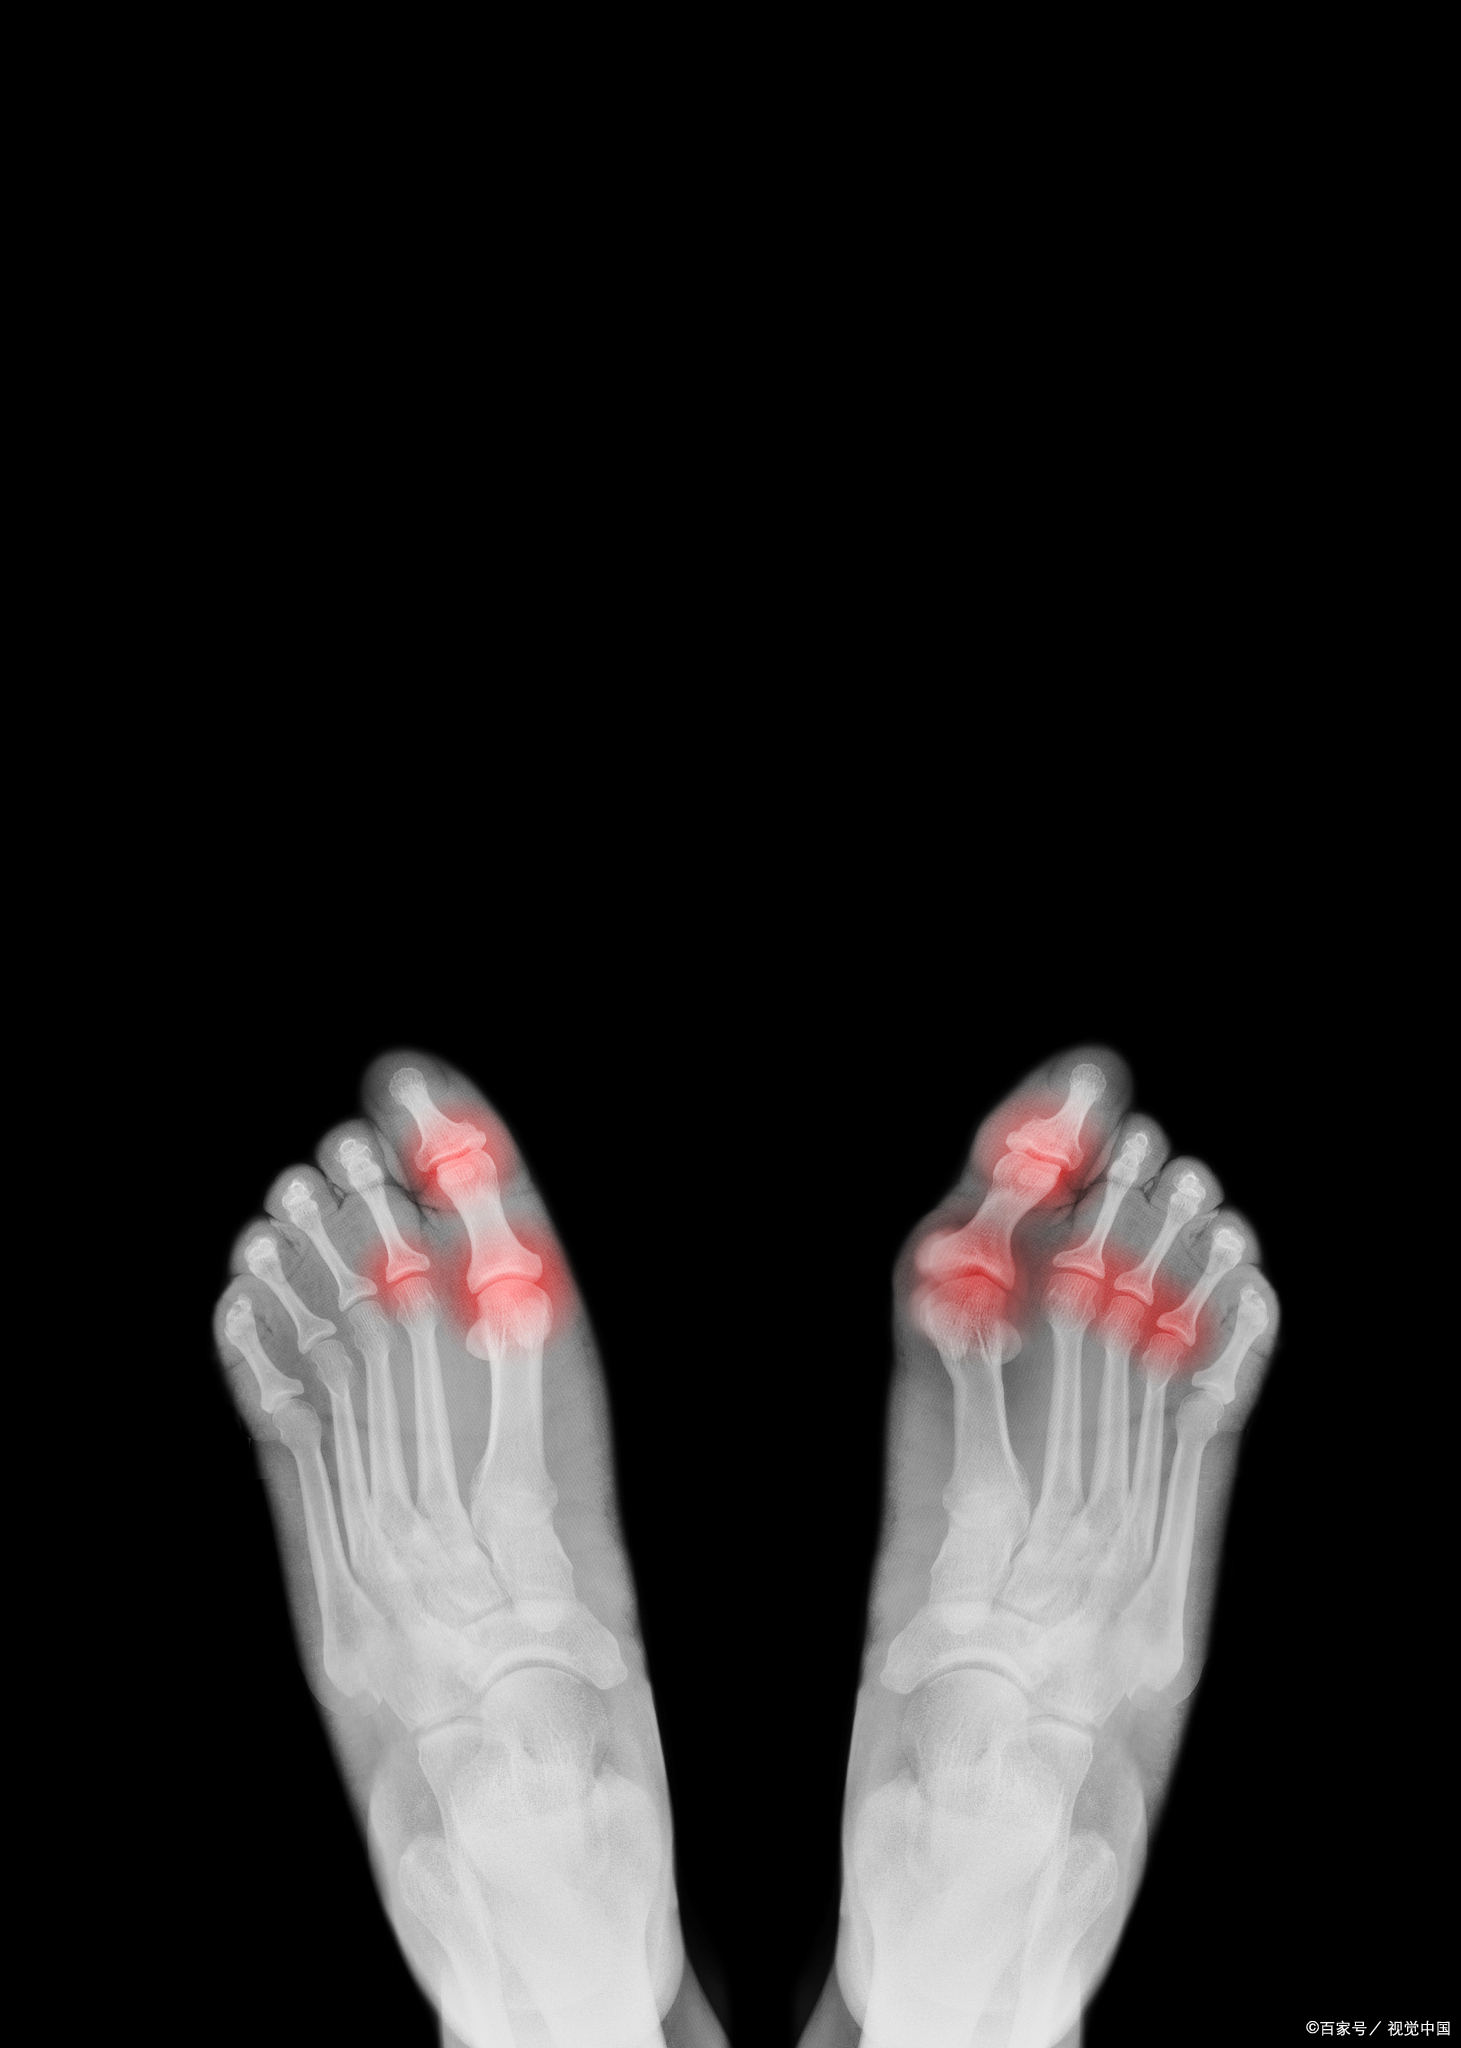 自限性和剧烈疼痛为特点的无菌性炎症,发病部位大多位于第一跖趾关节